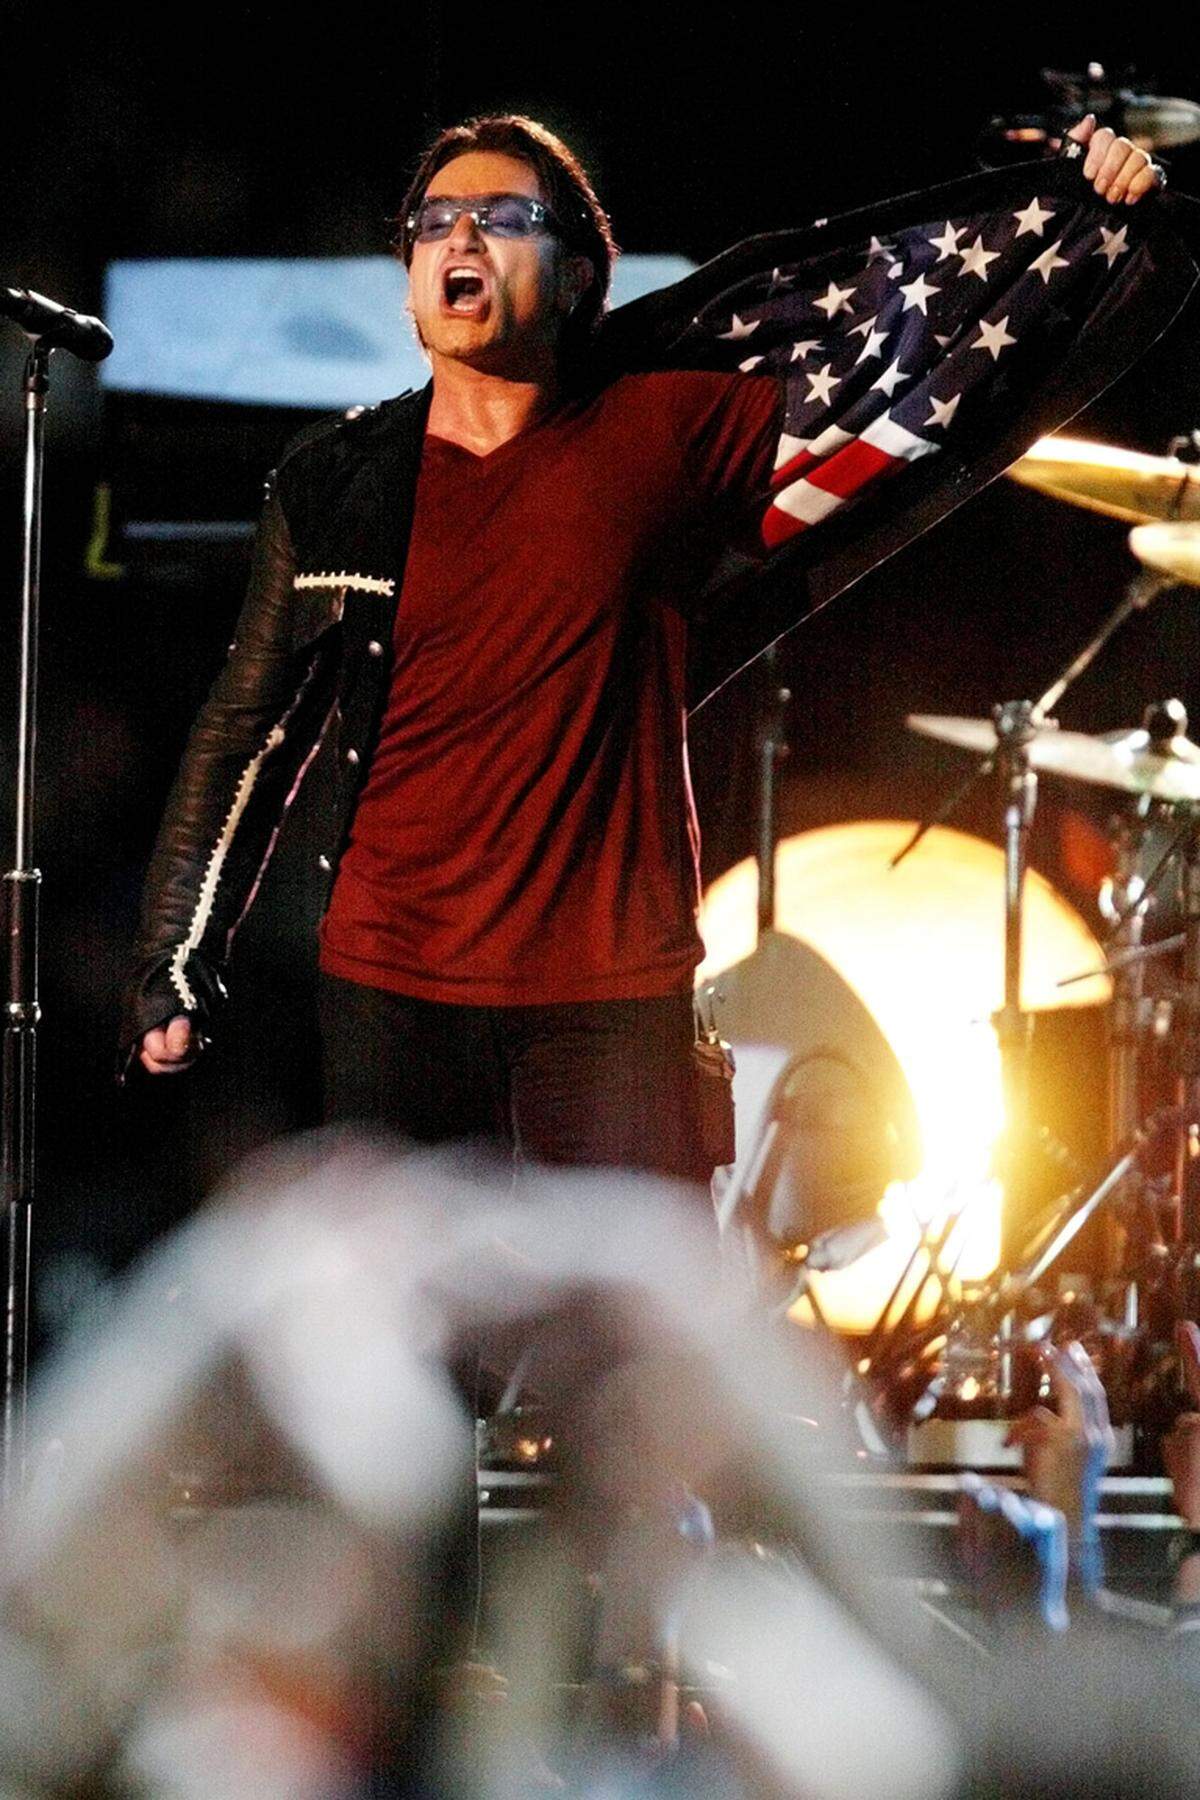 Bono gedachte beim Super Bowl mit "Where the Streets Have No Name" den Opfern von 9/11. Im Hintergrund liefen die Namen von allen Opfern, am Ende öffnete er seine Jacke und brachte eine USA-Flagge zum Vorschein.